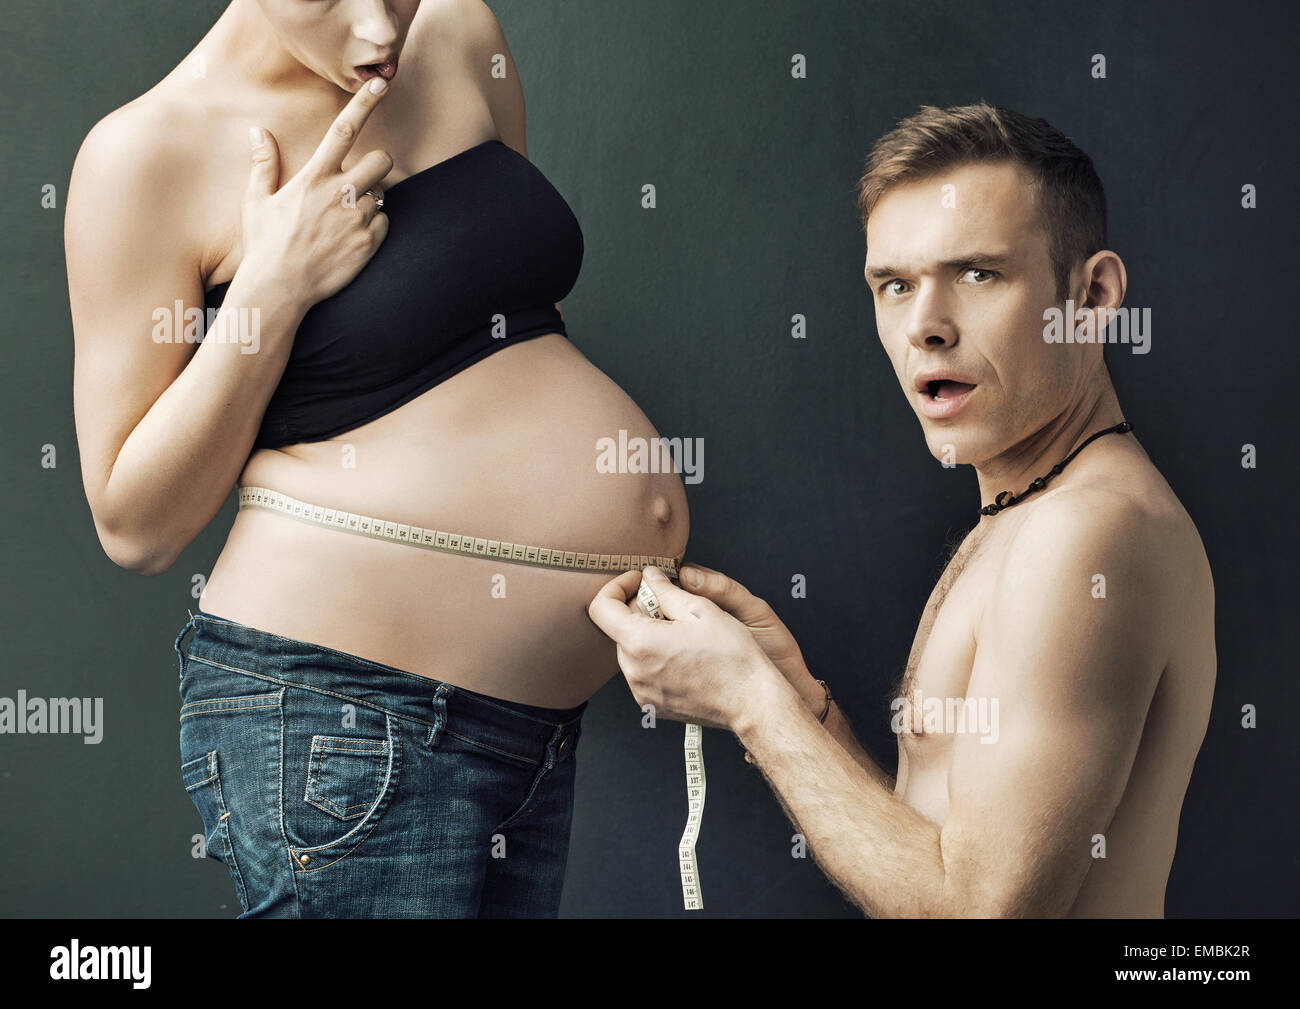 Про мужскую беременность